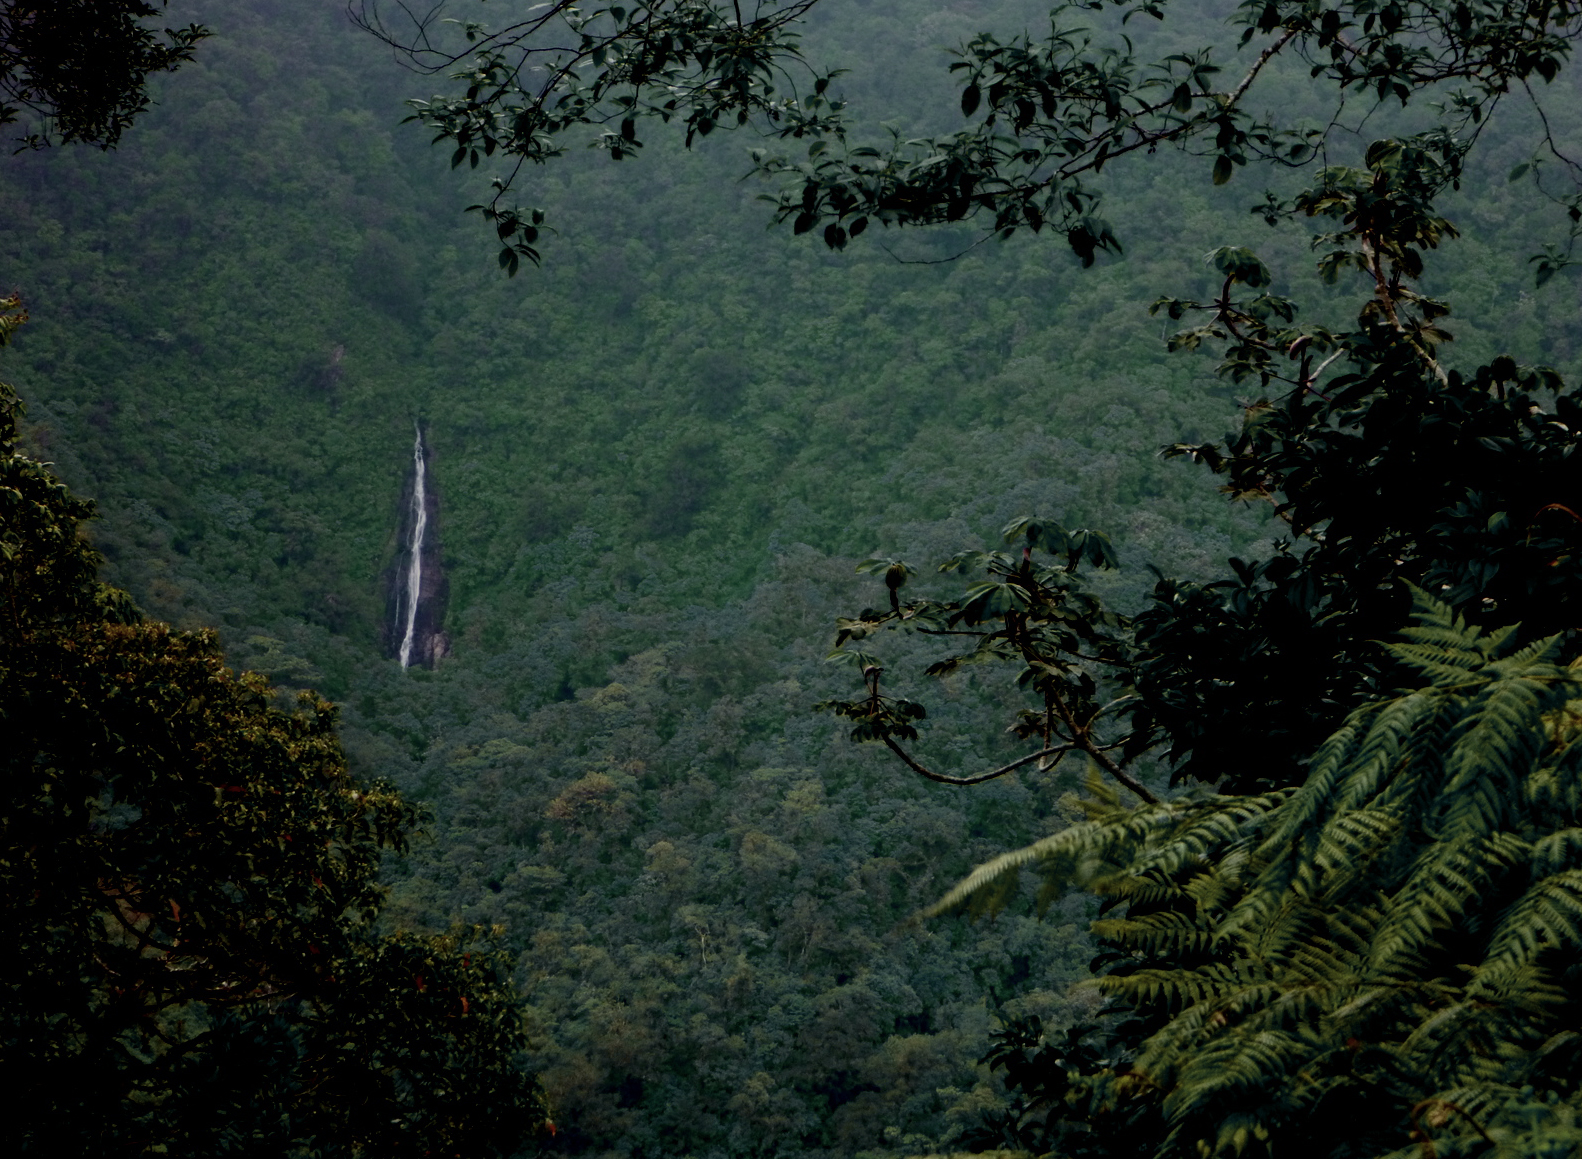 Hike through the rainforest on a rainy day